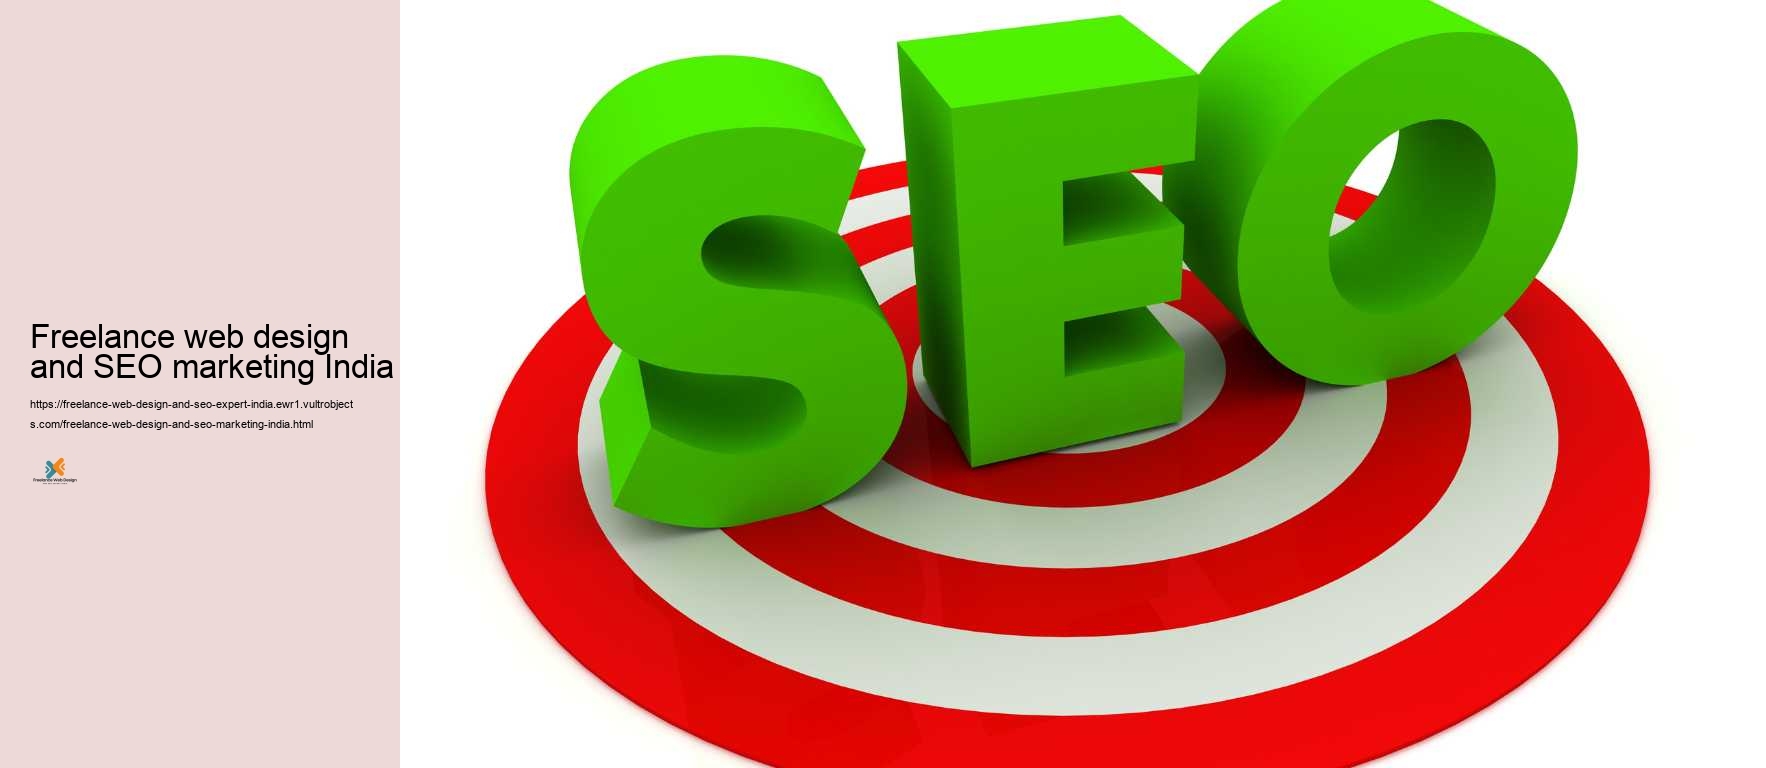 Freelance web design and SEO marketing India